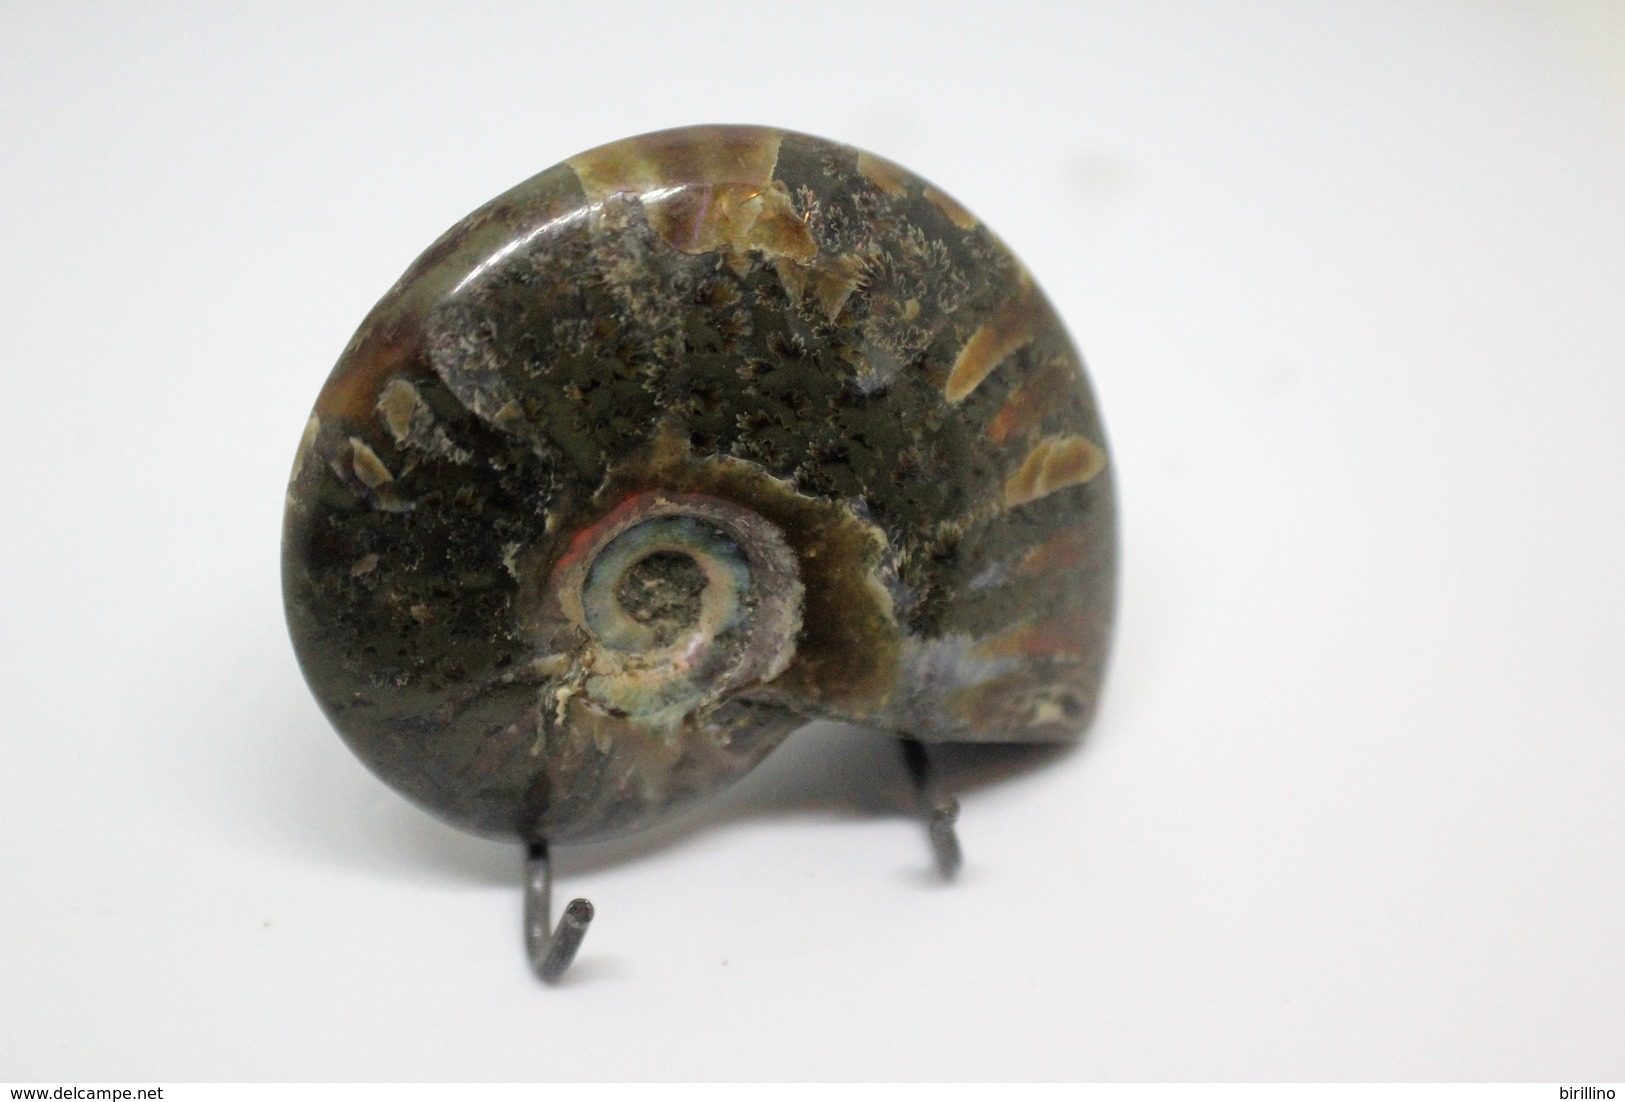 860 - Raro Fossile Di Ammonite Iridescente Naturale - Provenienza Madagascar Peso 77 Gr - Fossils